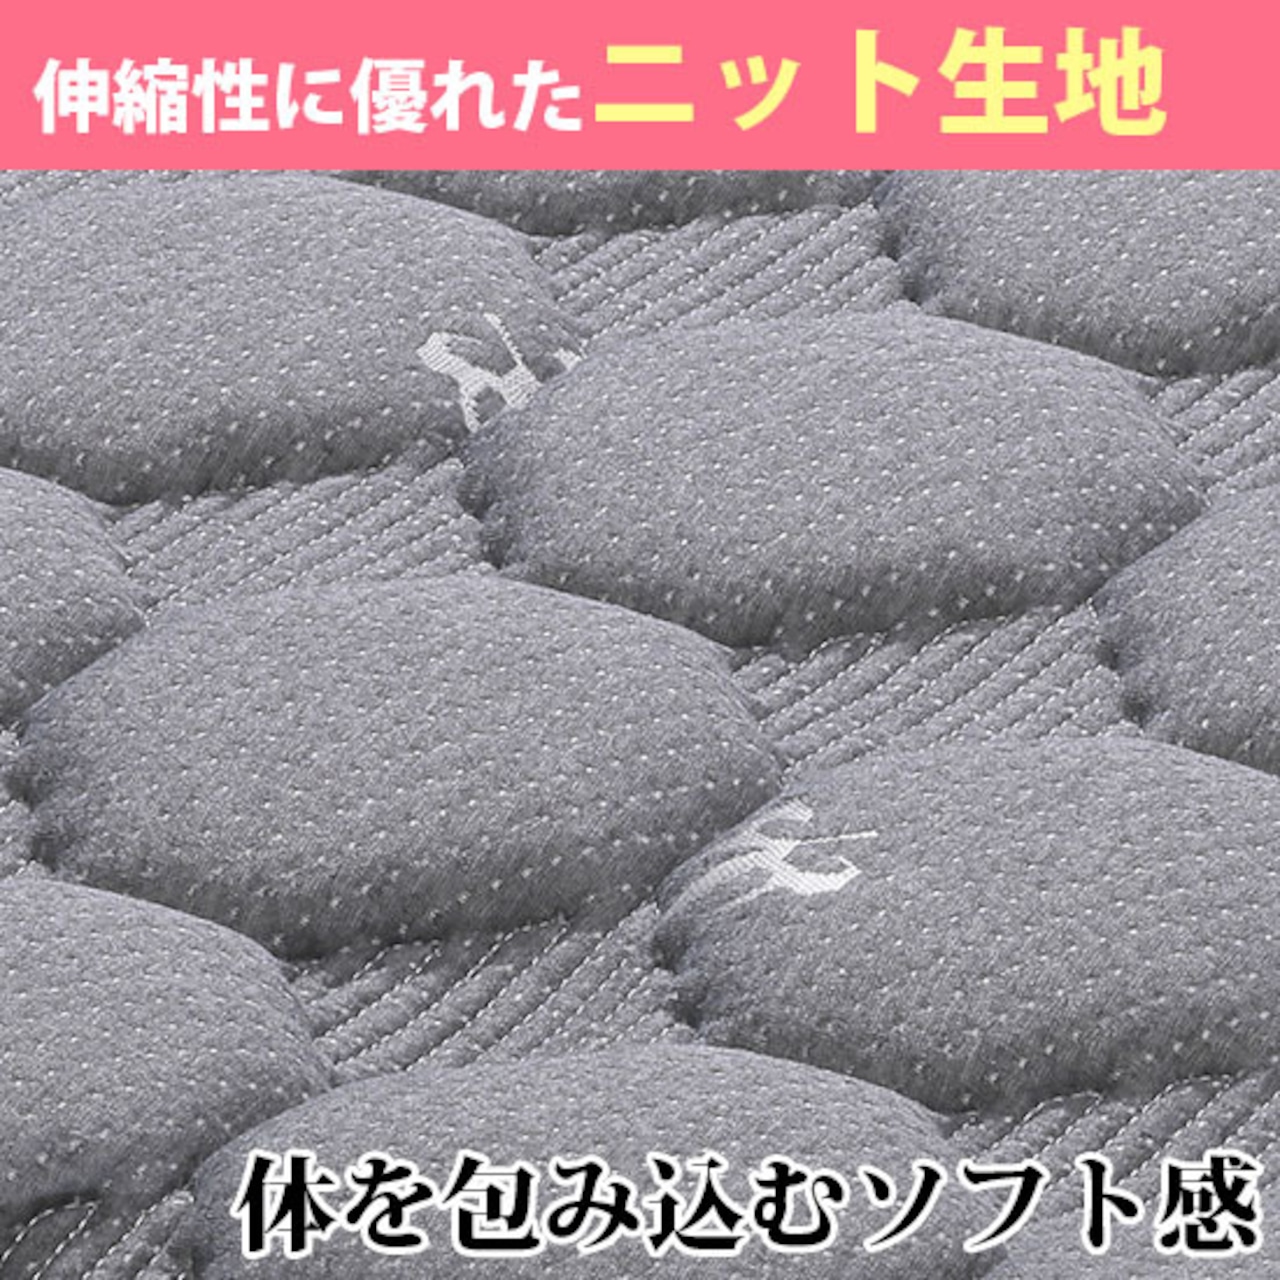 【ワイドダブル】マットレス WDマットレス ポケットコイル 寝具